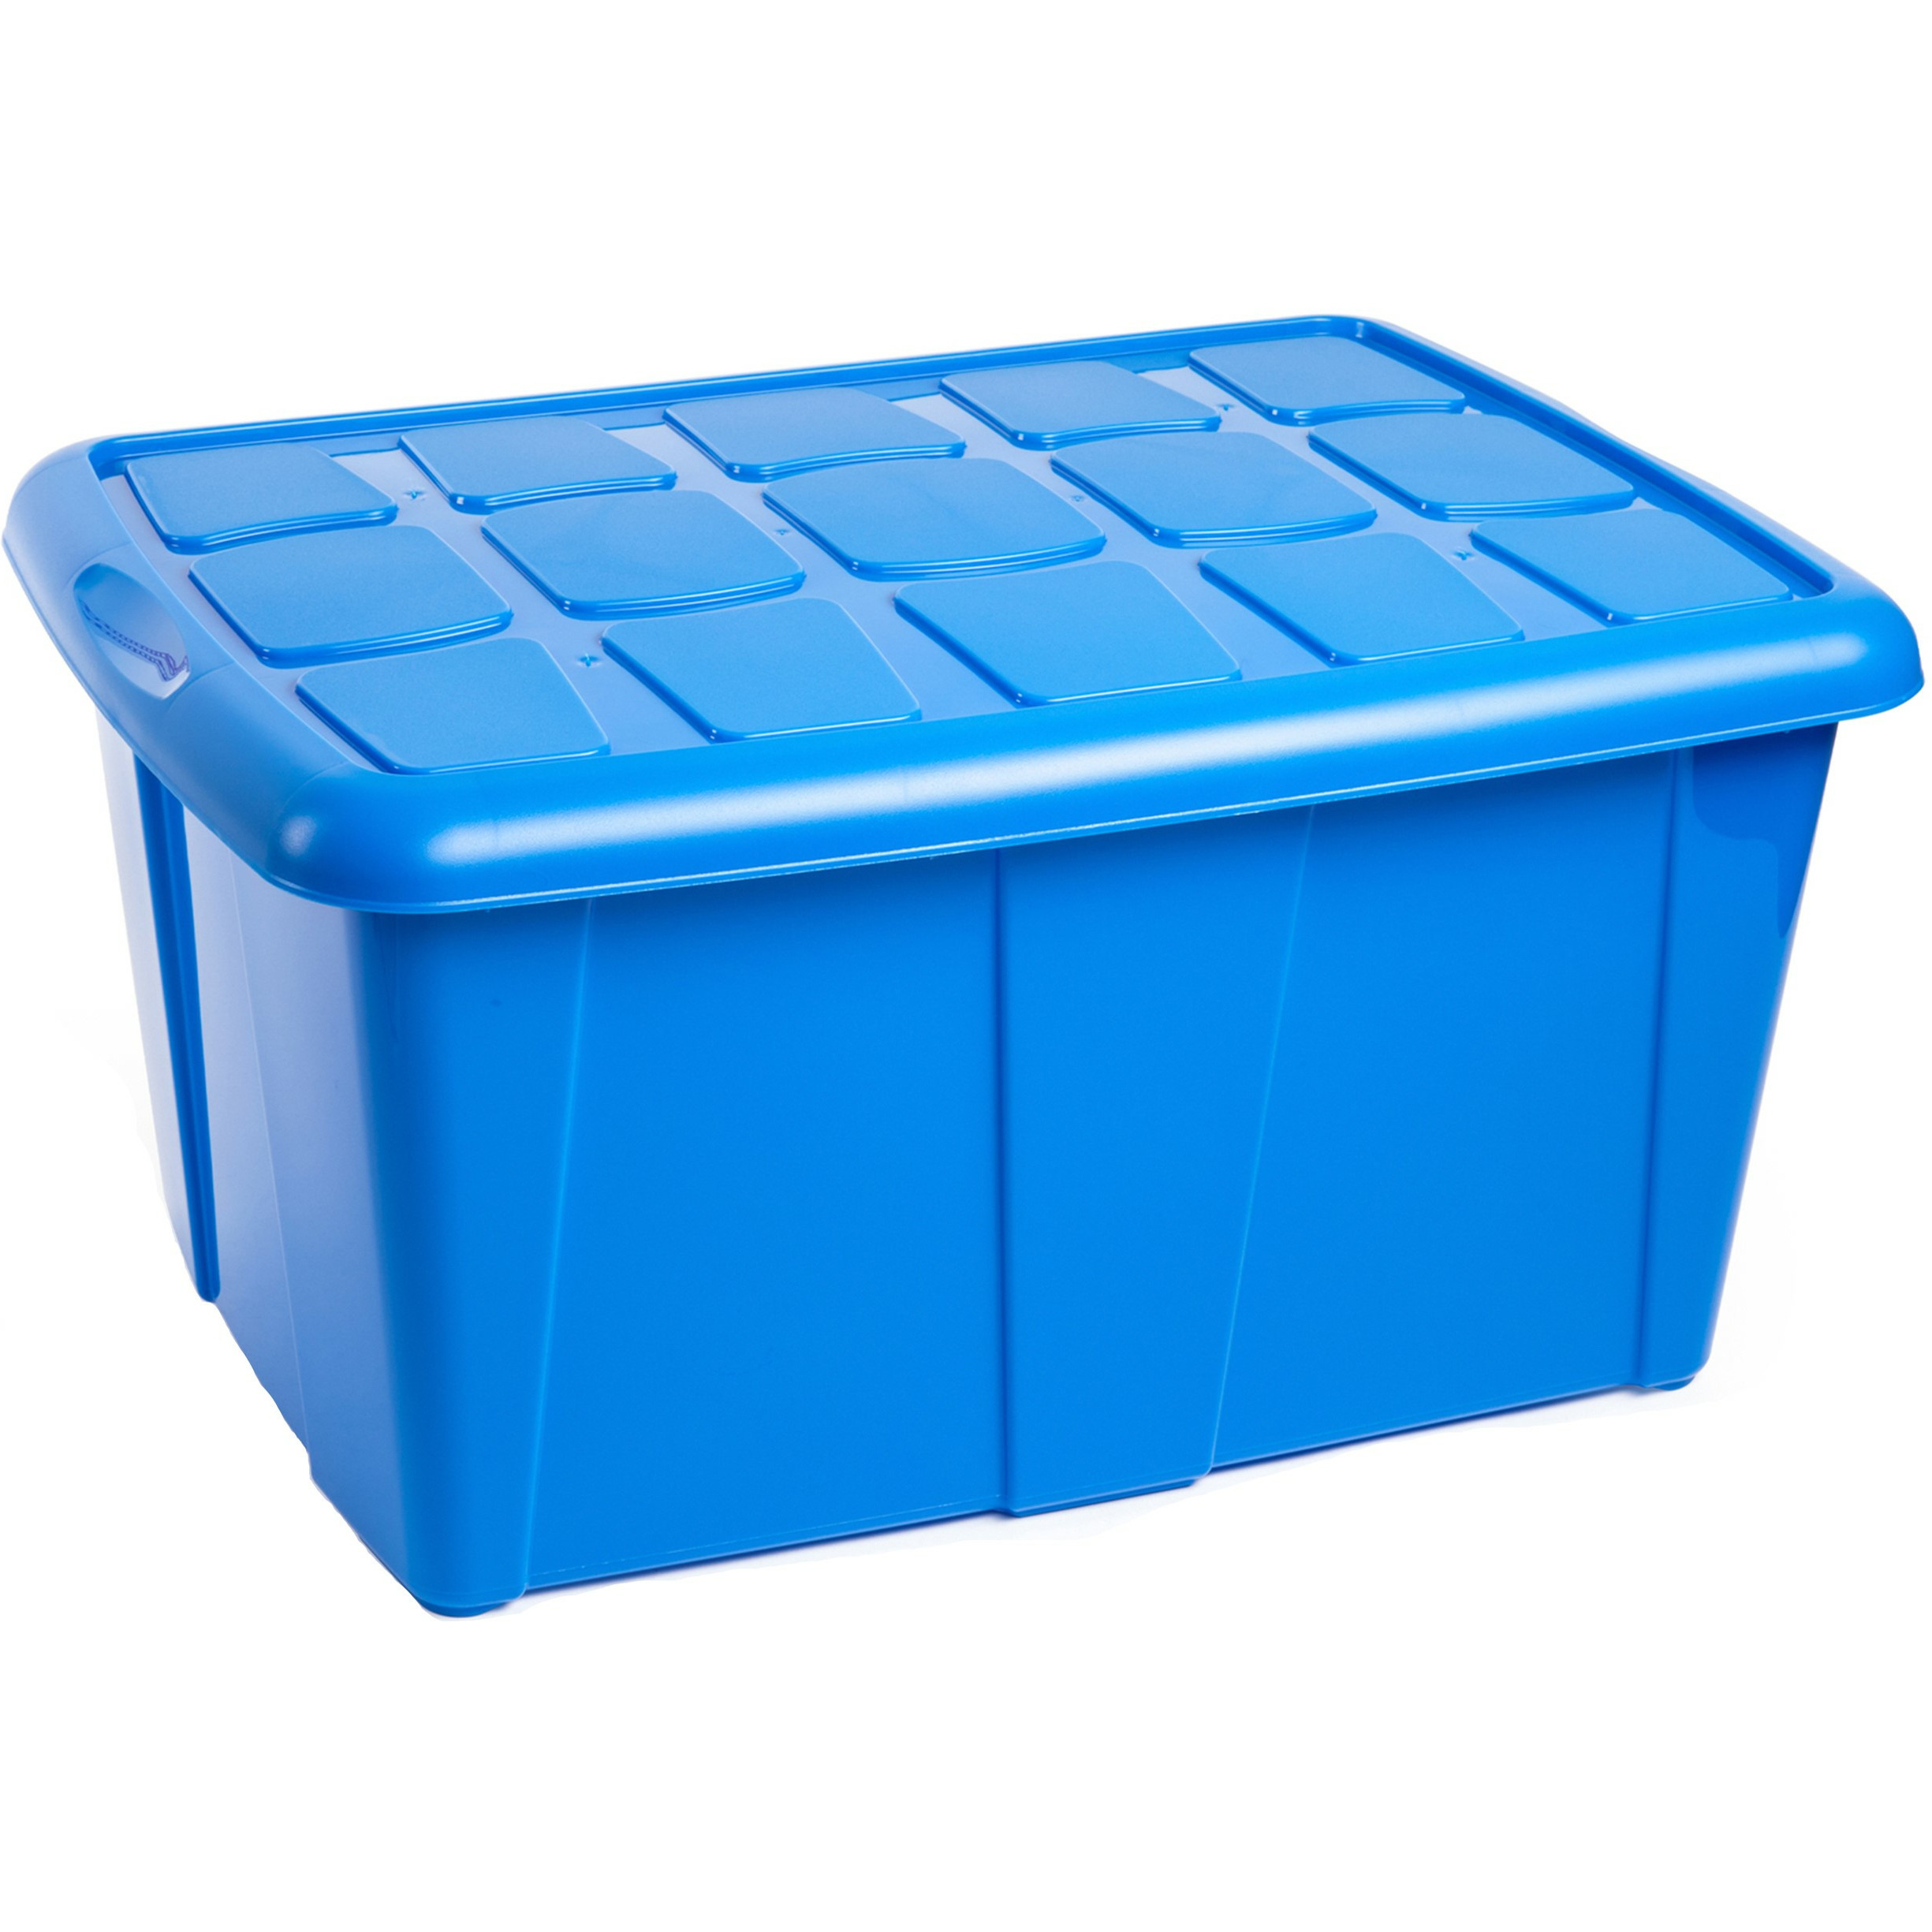 Opslagbox kist van 60 liter met deksel Blauw kunststof 63 x 46 x 32 cm